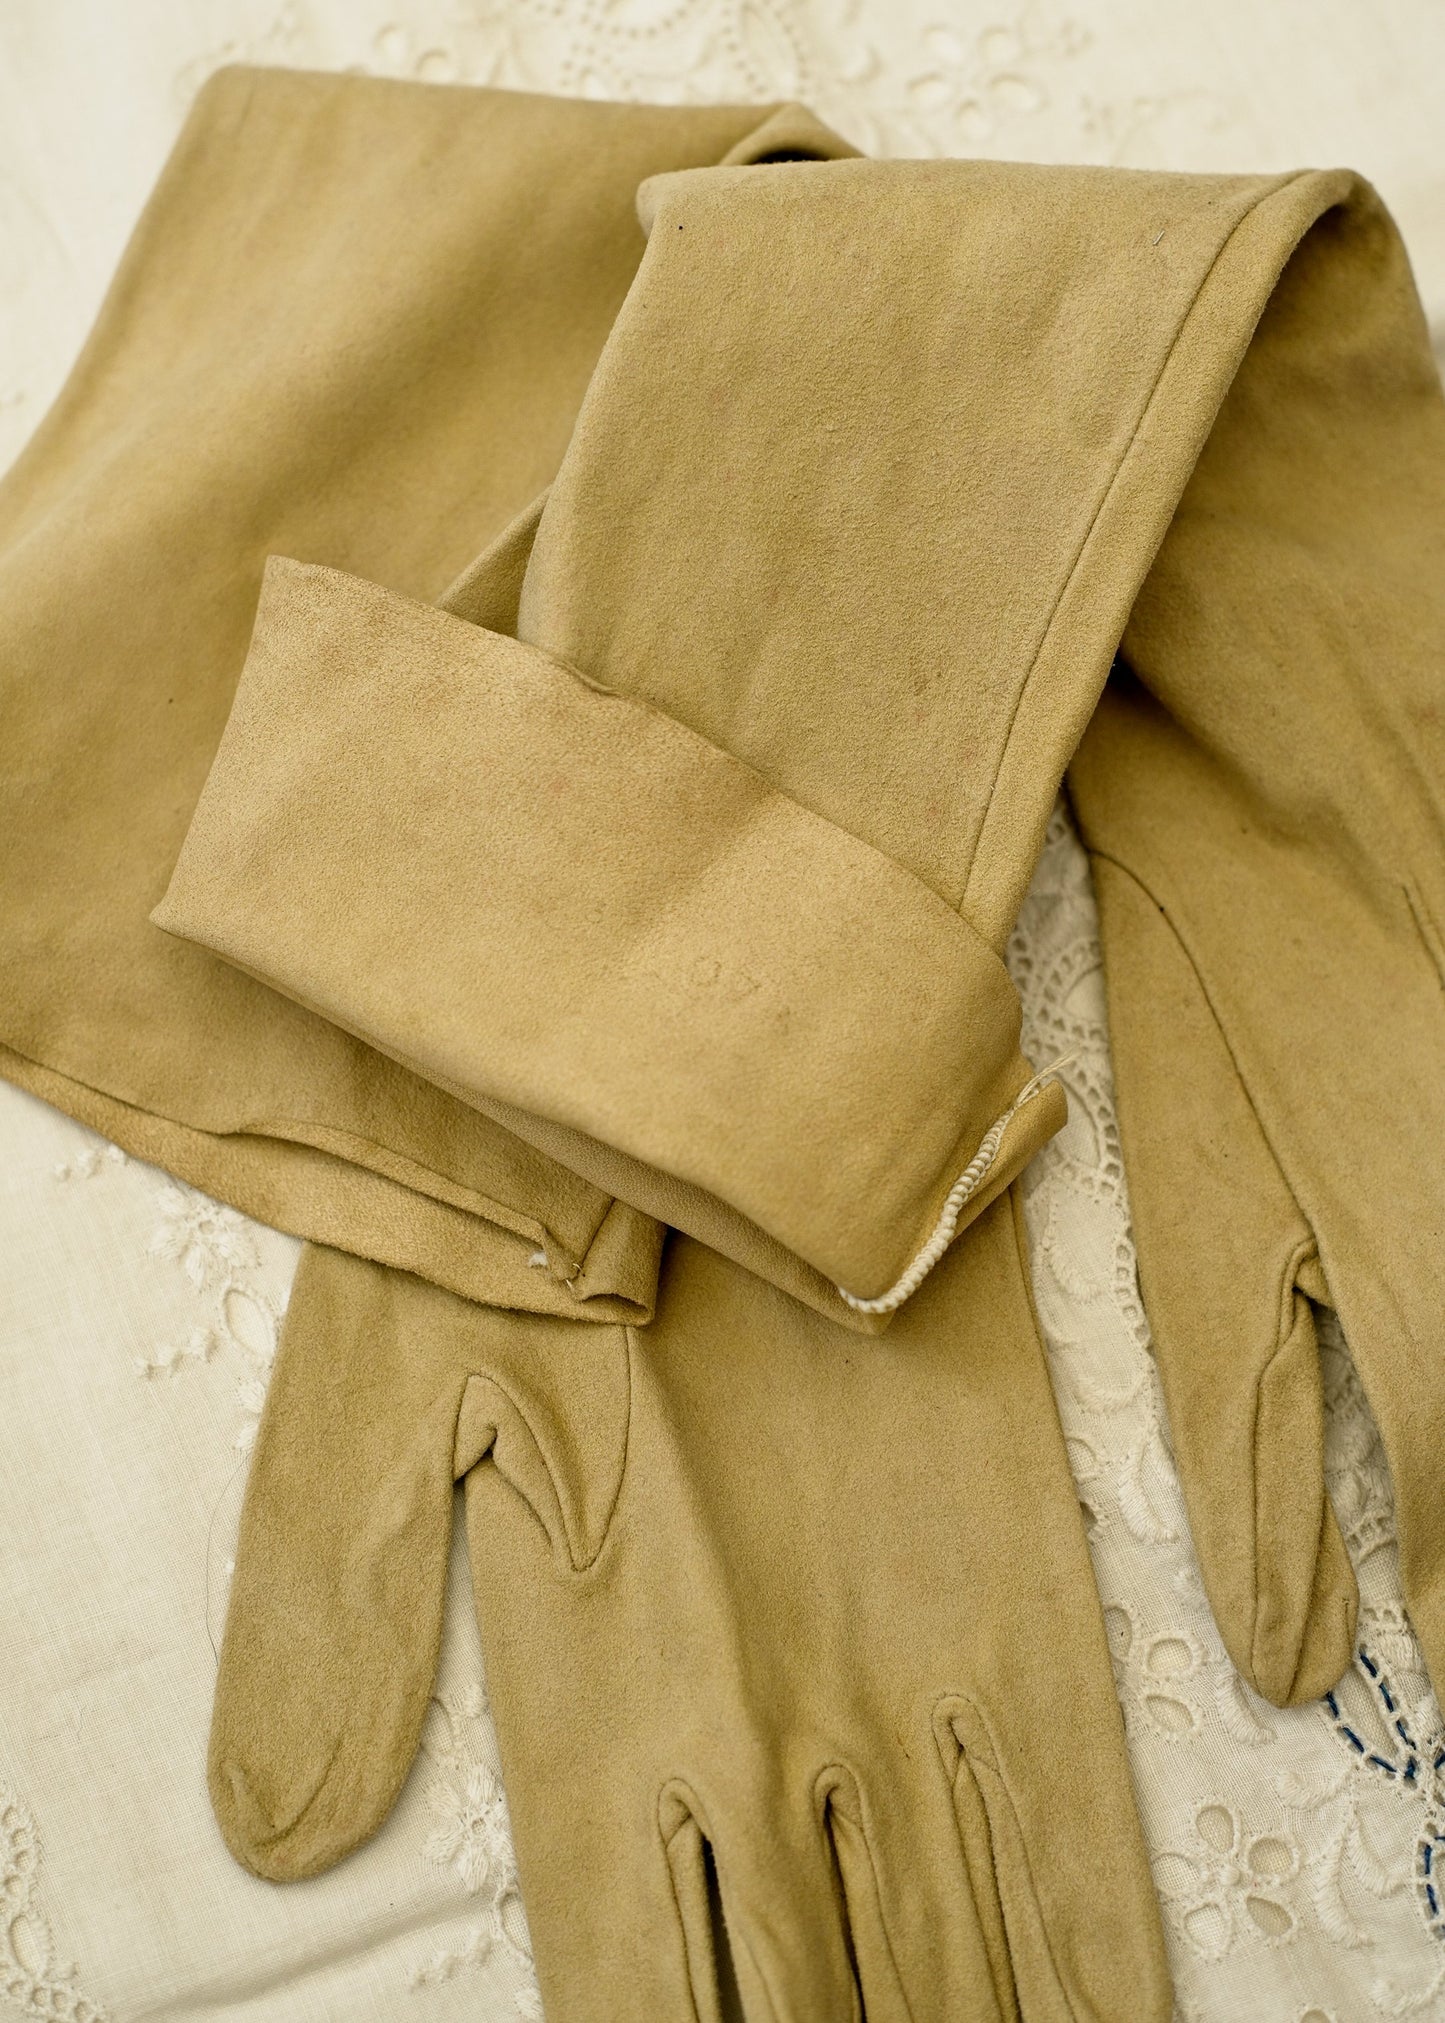 Vintage Long Beige Kid Leather Evening Gloves Size 07